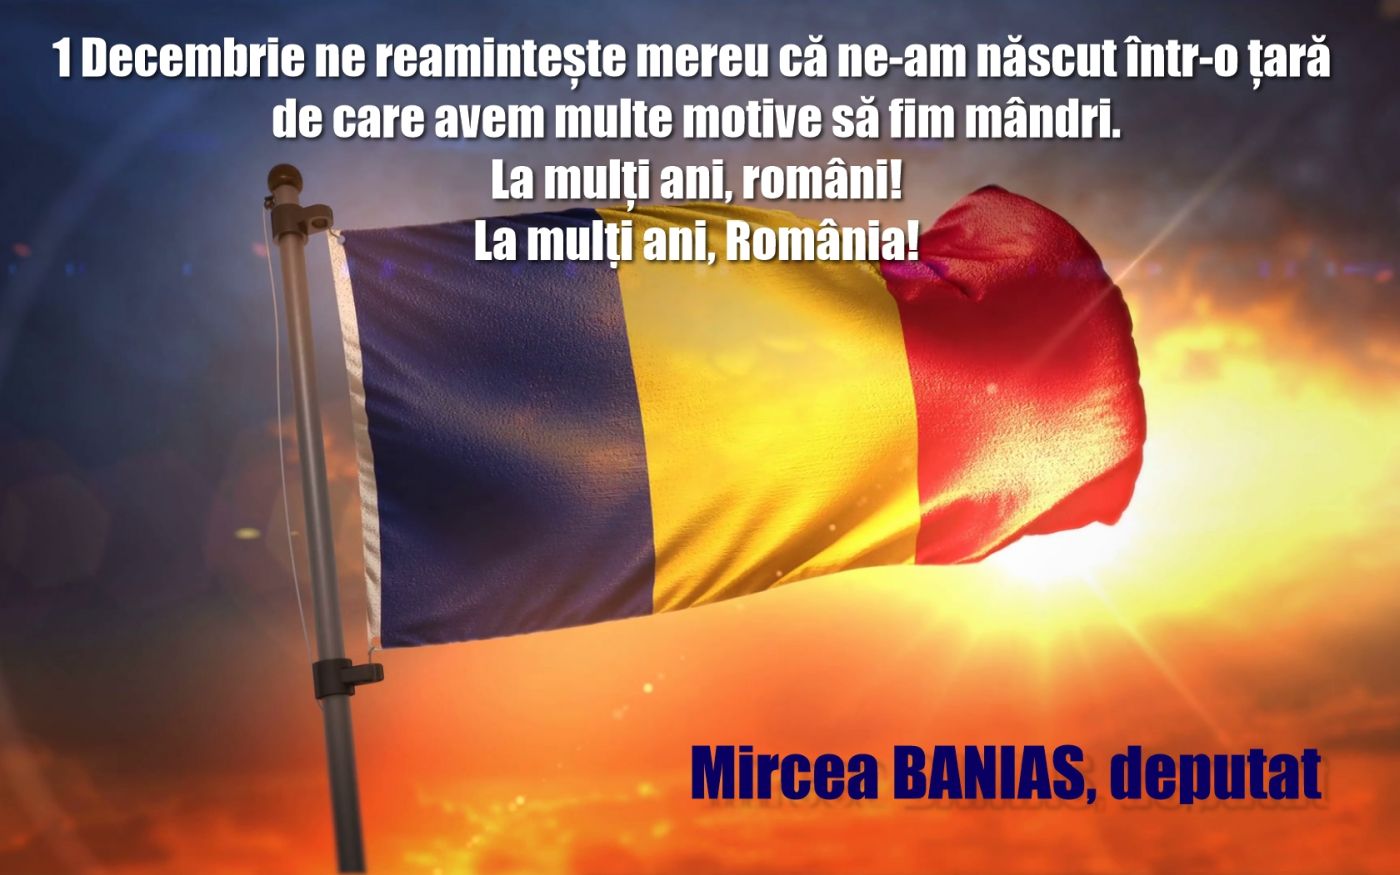 Deputatul Mircea Banias vă urează „La mulți ani!”